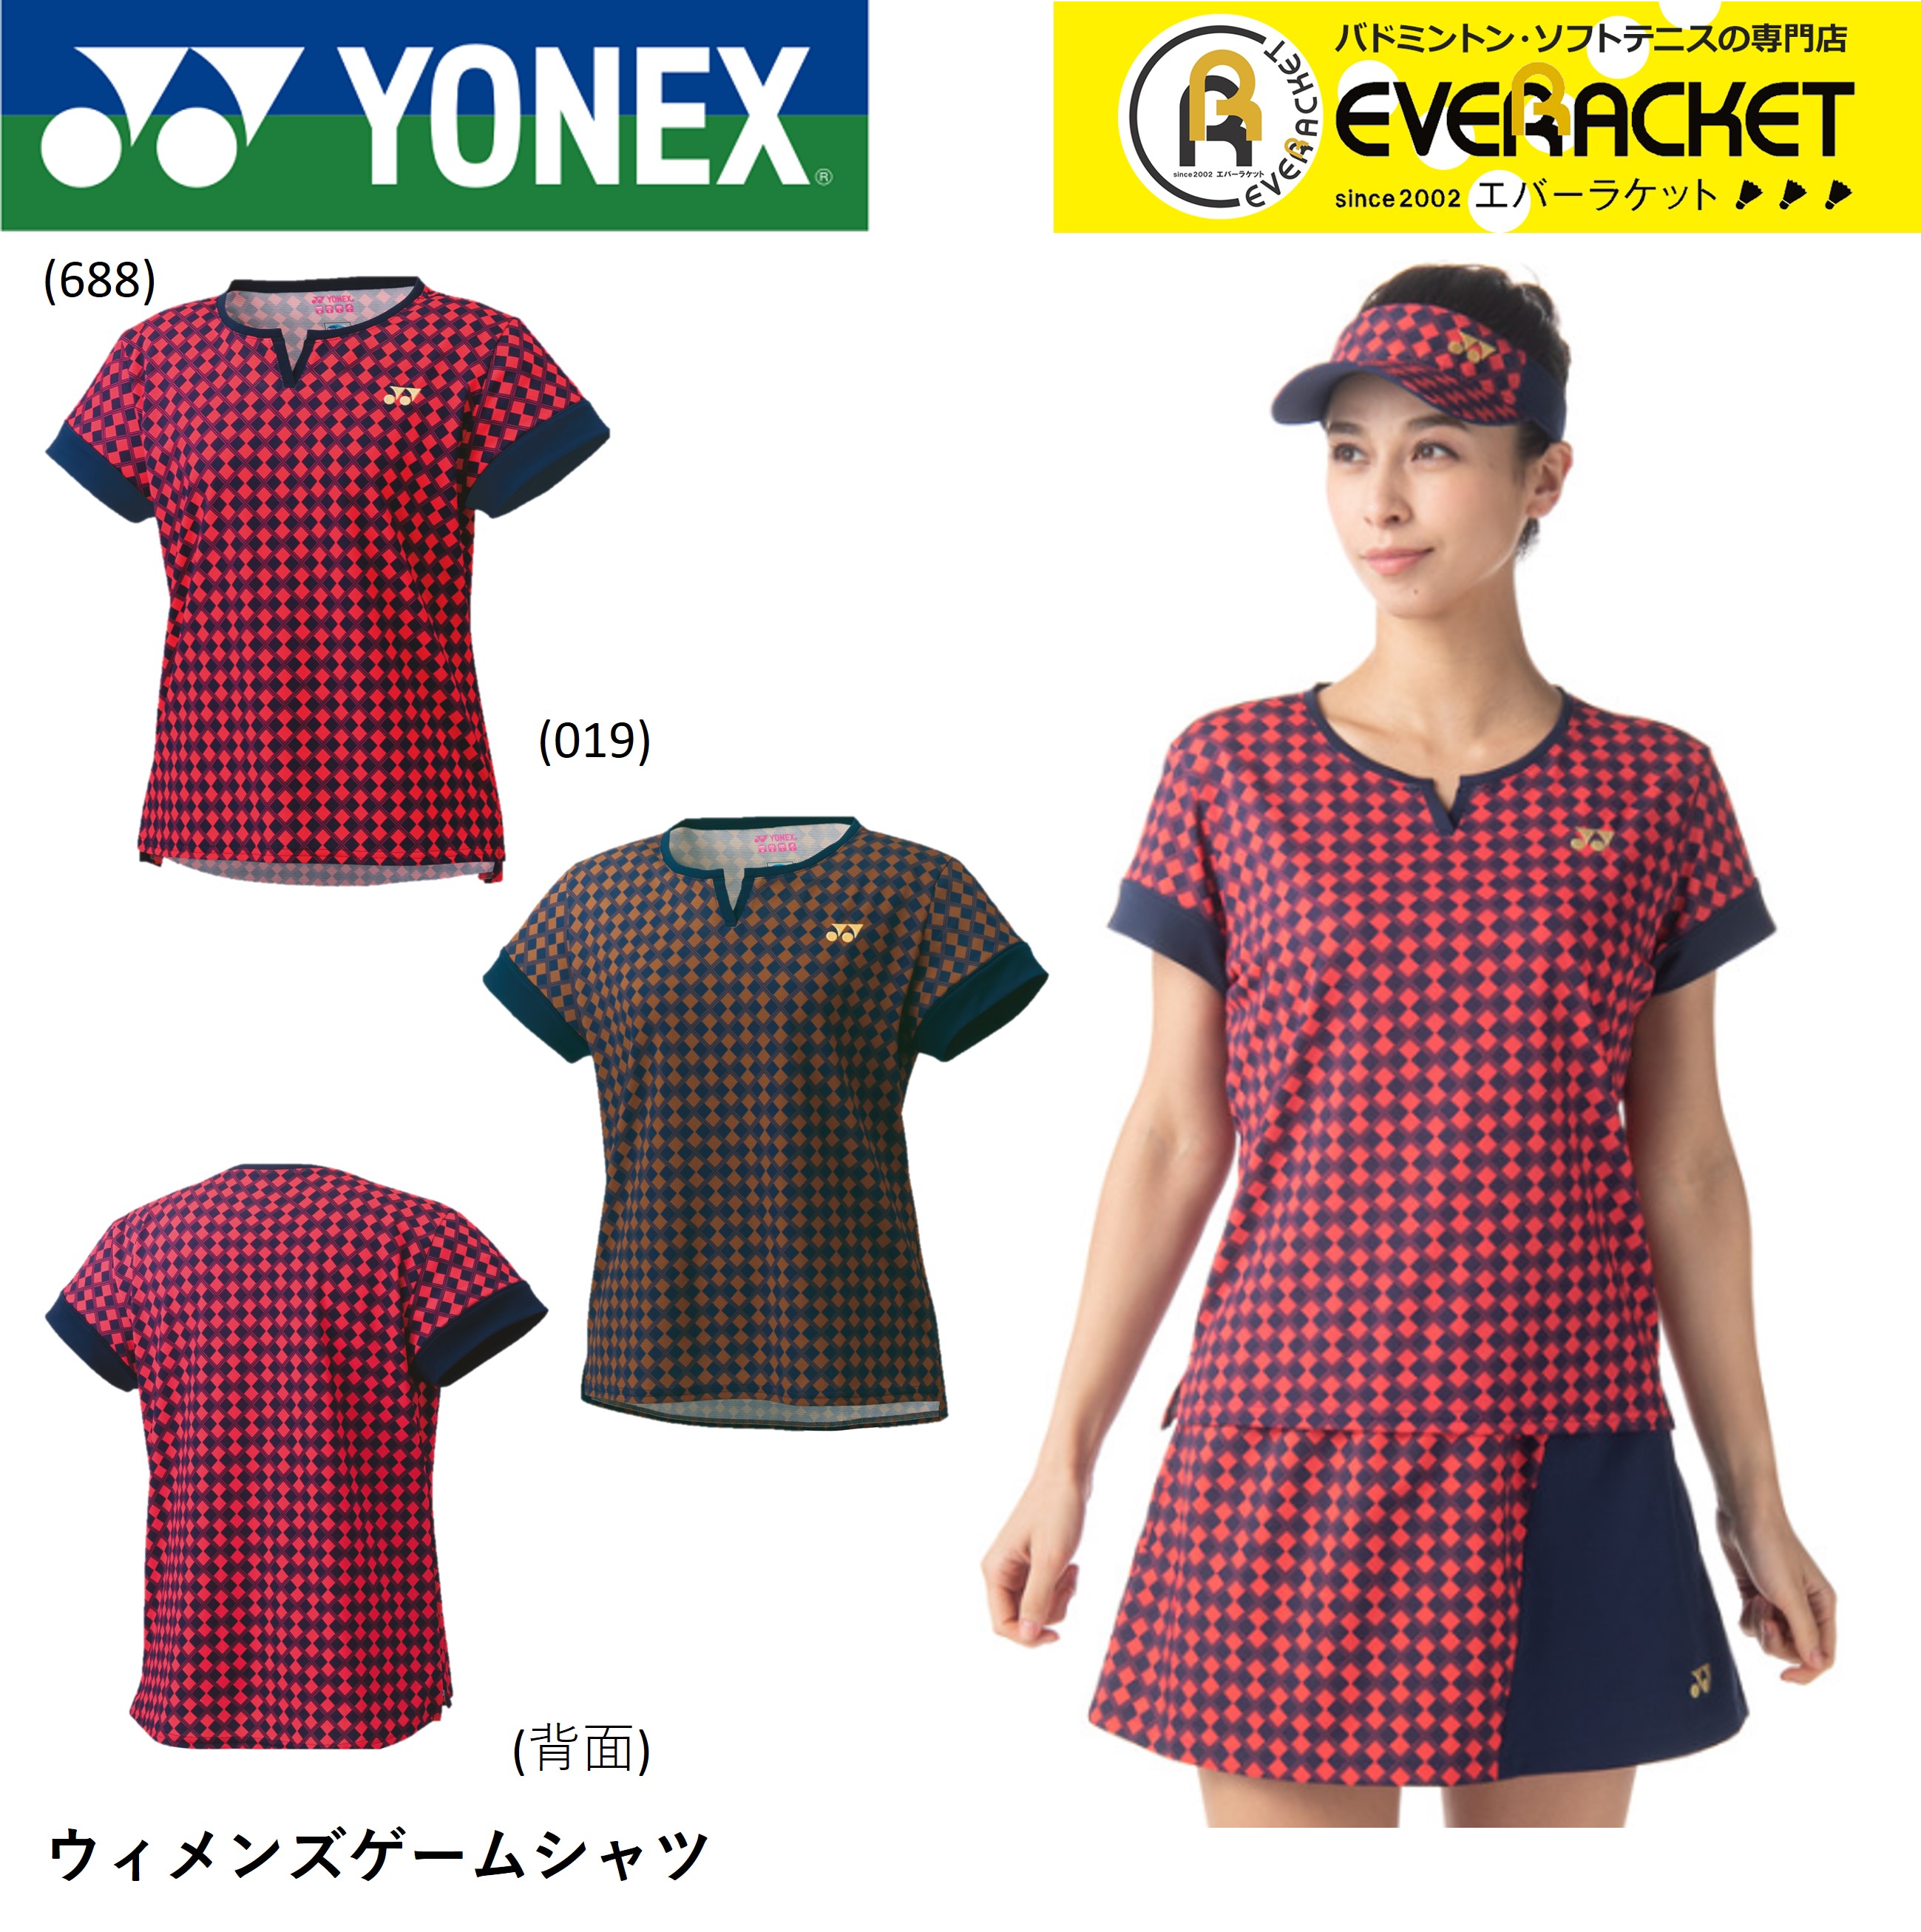 ヨネックス YONEX ウィメンズゲームシャツ 20741 バドミントン・テニス：エバーラケット 店